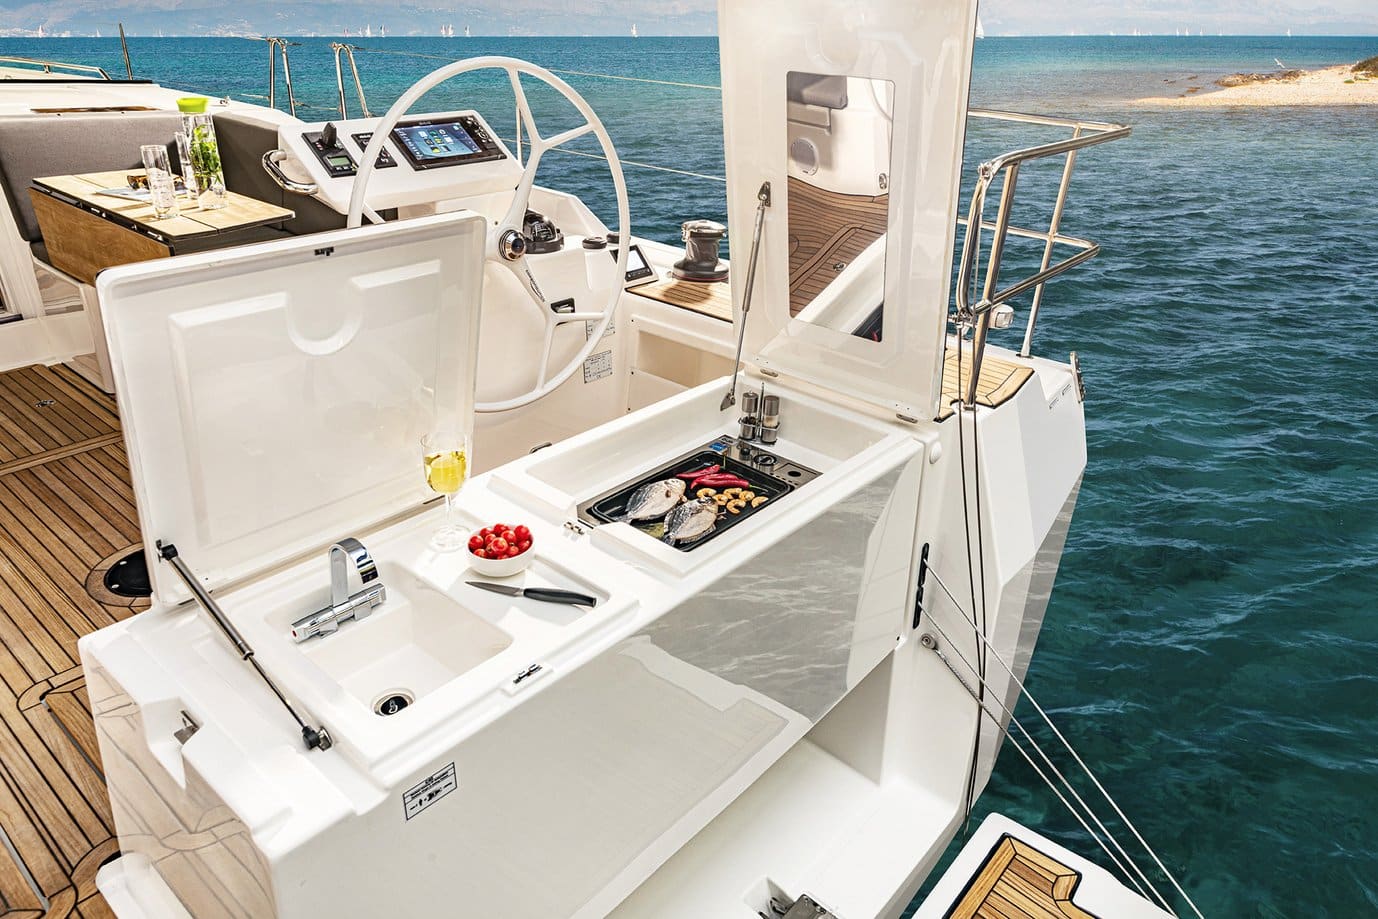 Ein luxuriöses Yachtcockpit mit Steuerrad, Navigationsgeräten und einer Außenküche mit offenem Grill und einem Glas Champagner. Blaues Meer und klarer Himmel im Hintergrund, perfekt für einen Segeltörn.